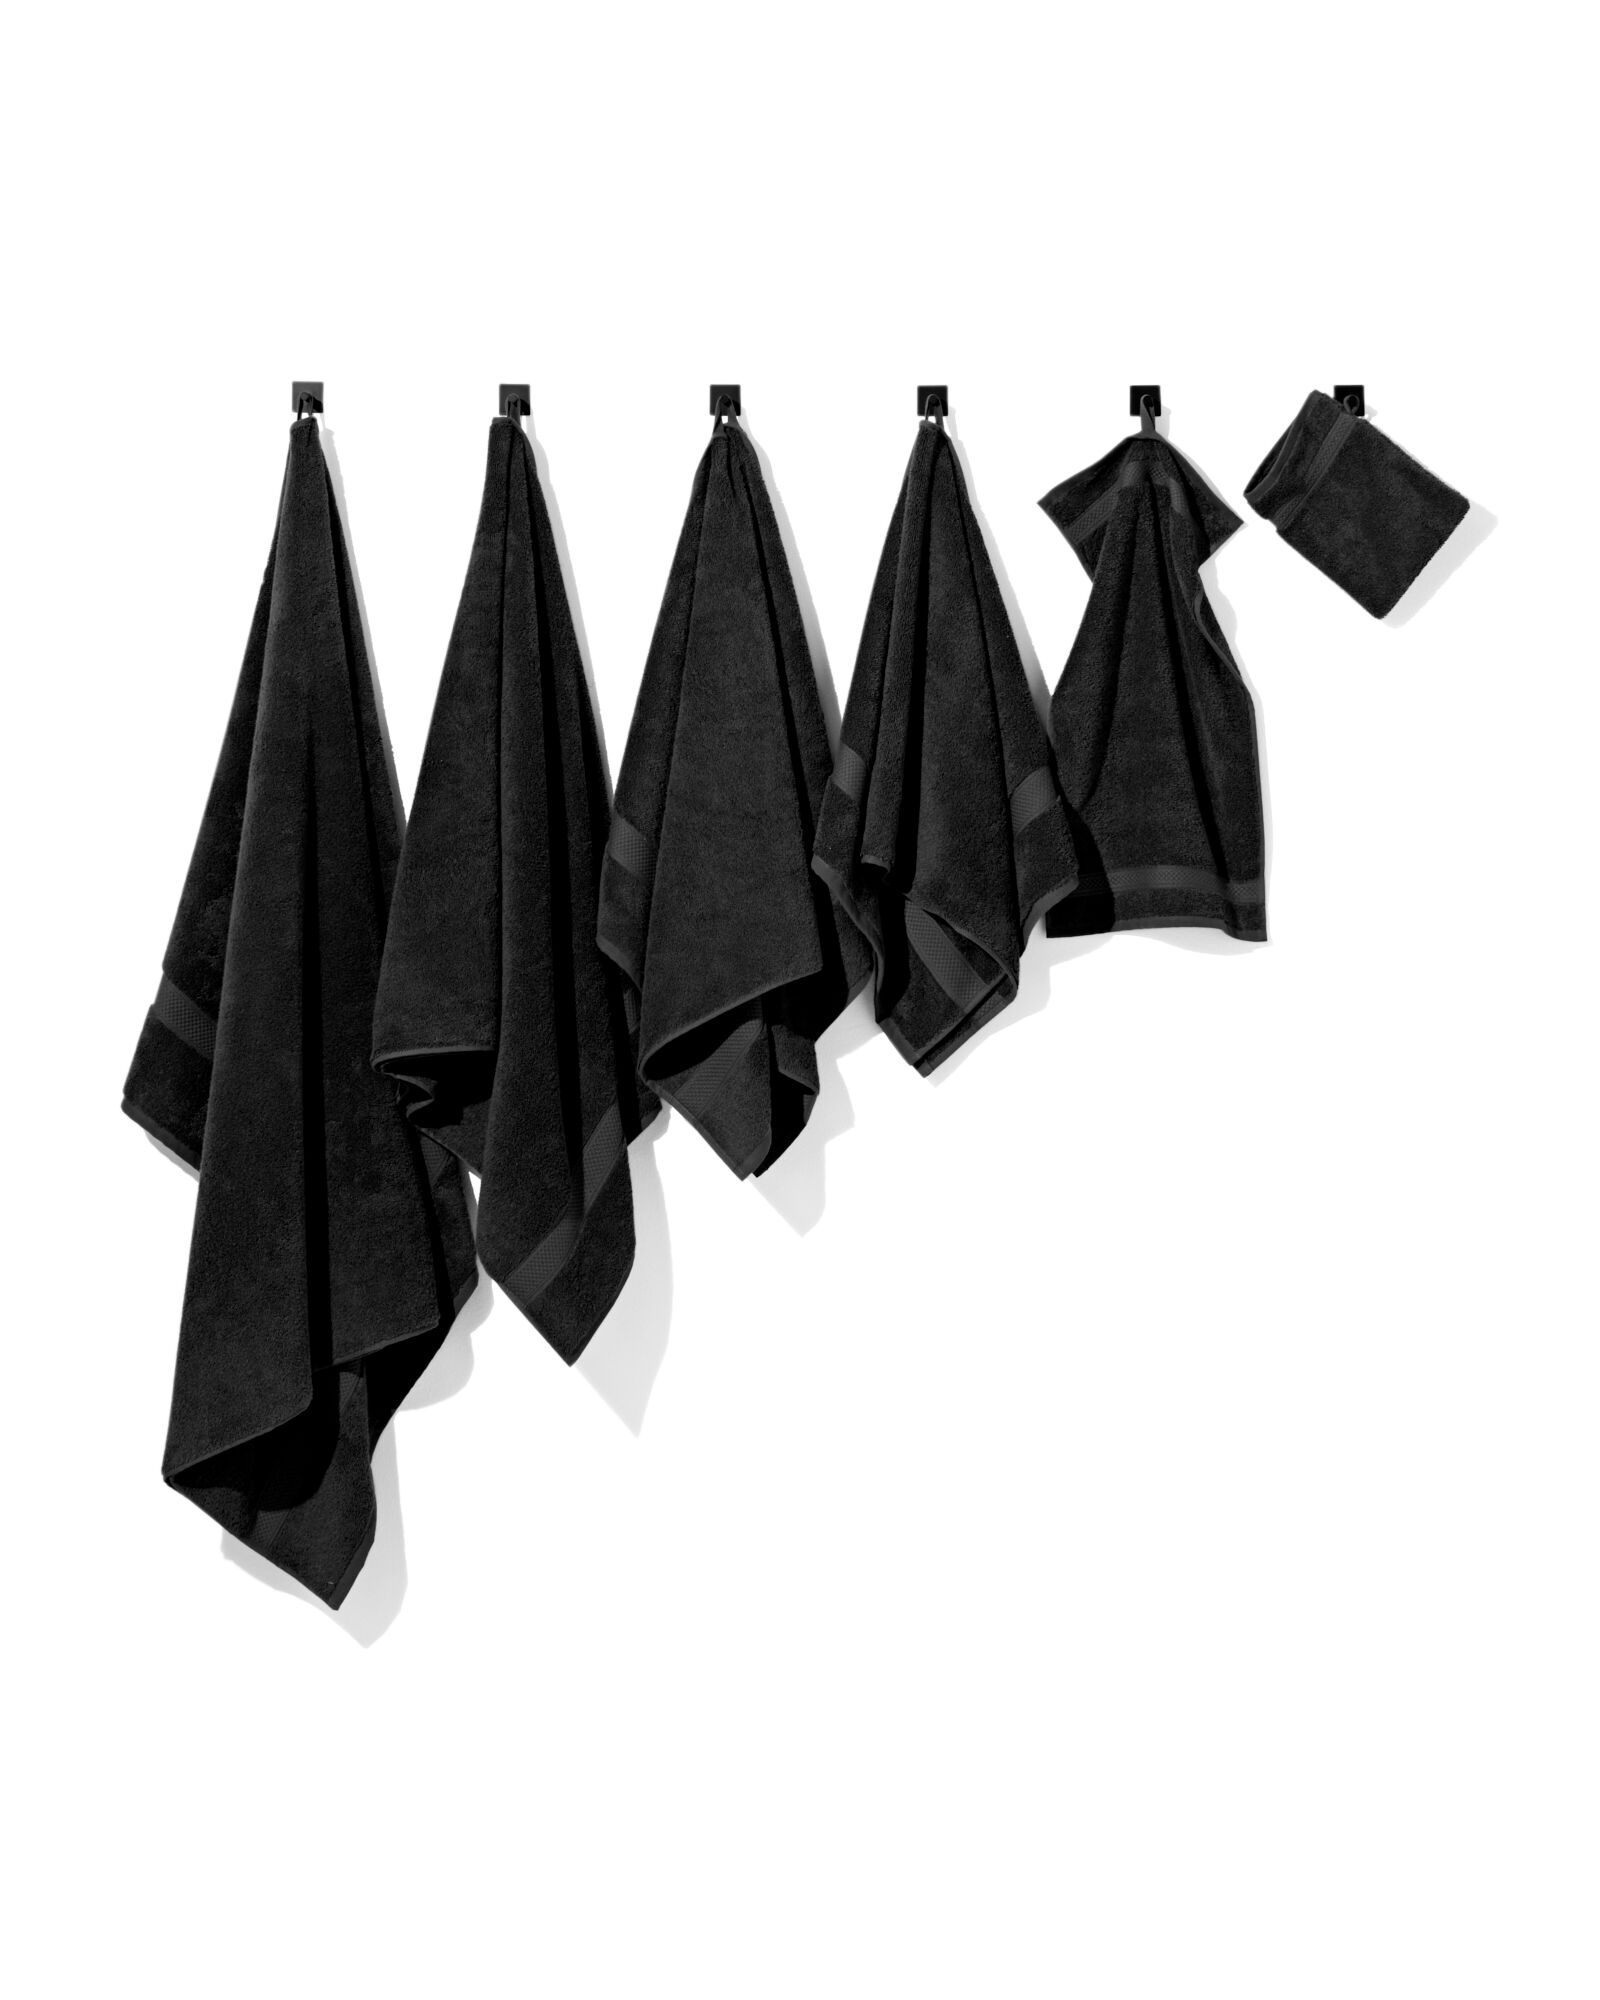 handdoek 60x110 zware kwaliteit zwart zwart handdoek 60 x 110 - 5210136 - HEMA